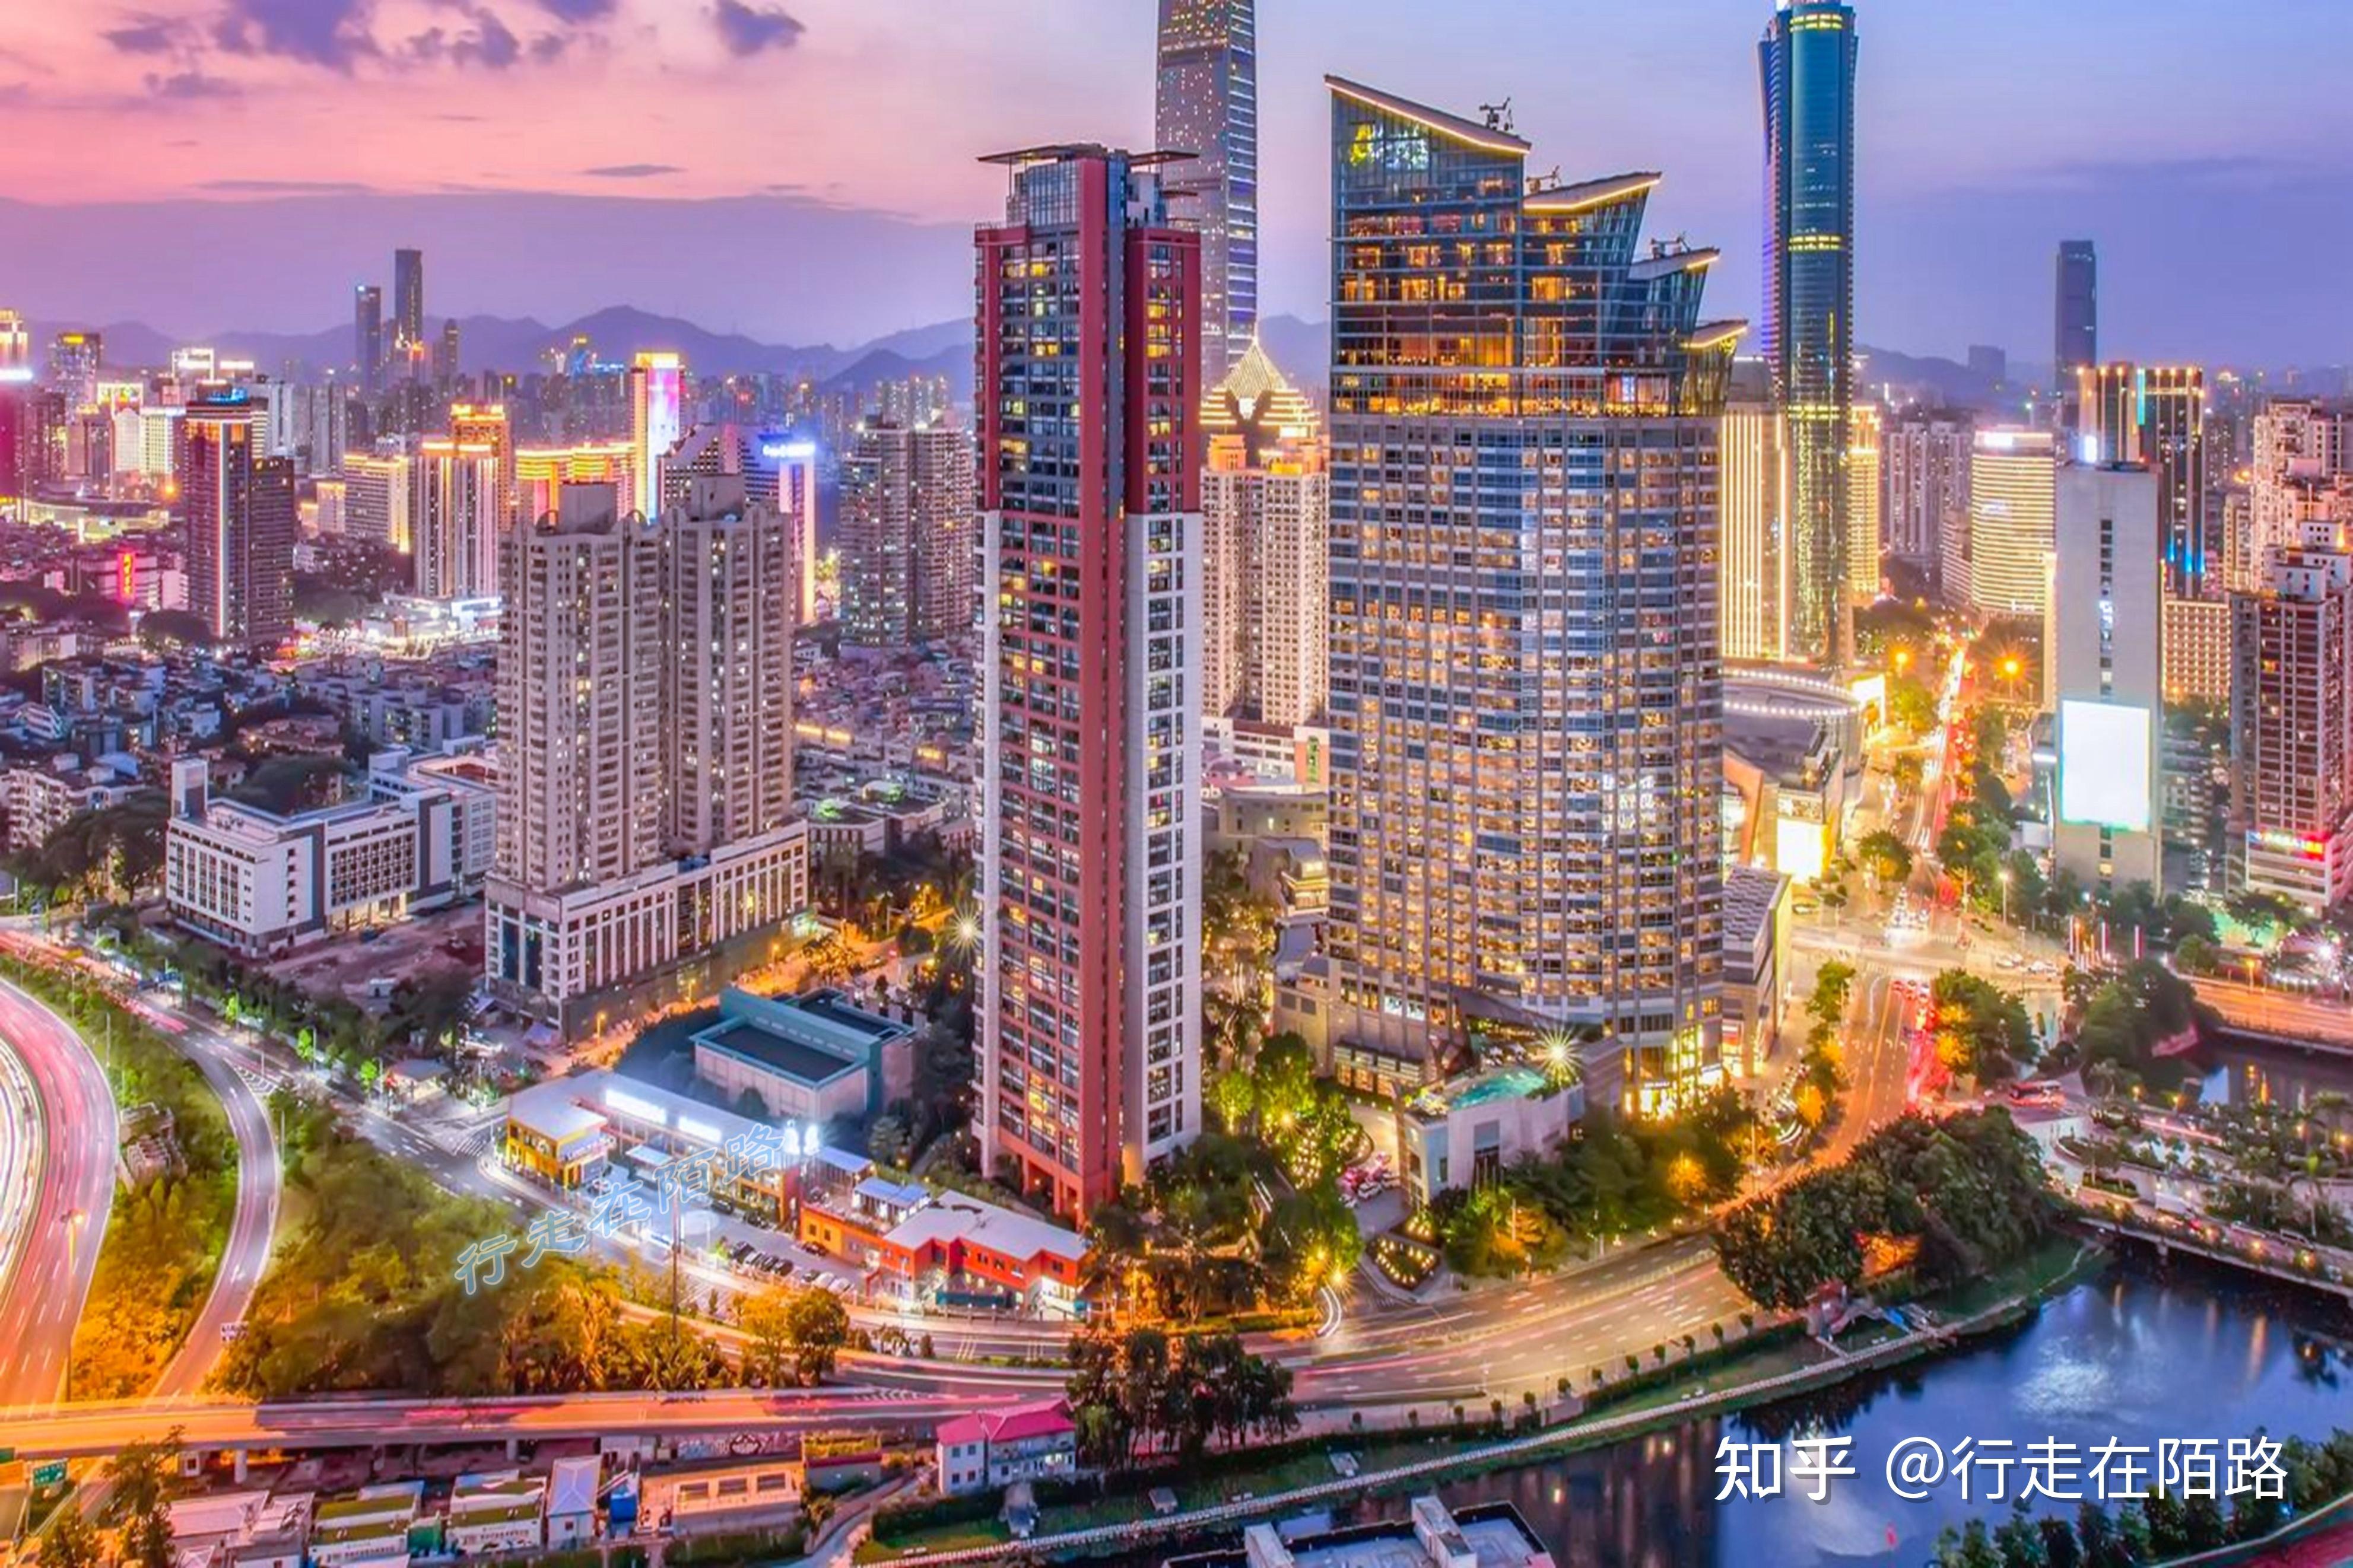 海外视野:中国最安全宜居的15座城市,3000名老外这么说 